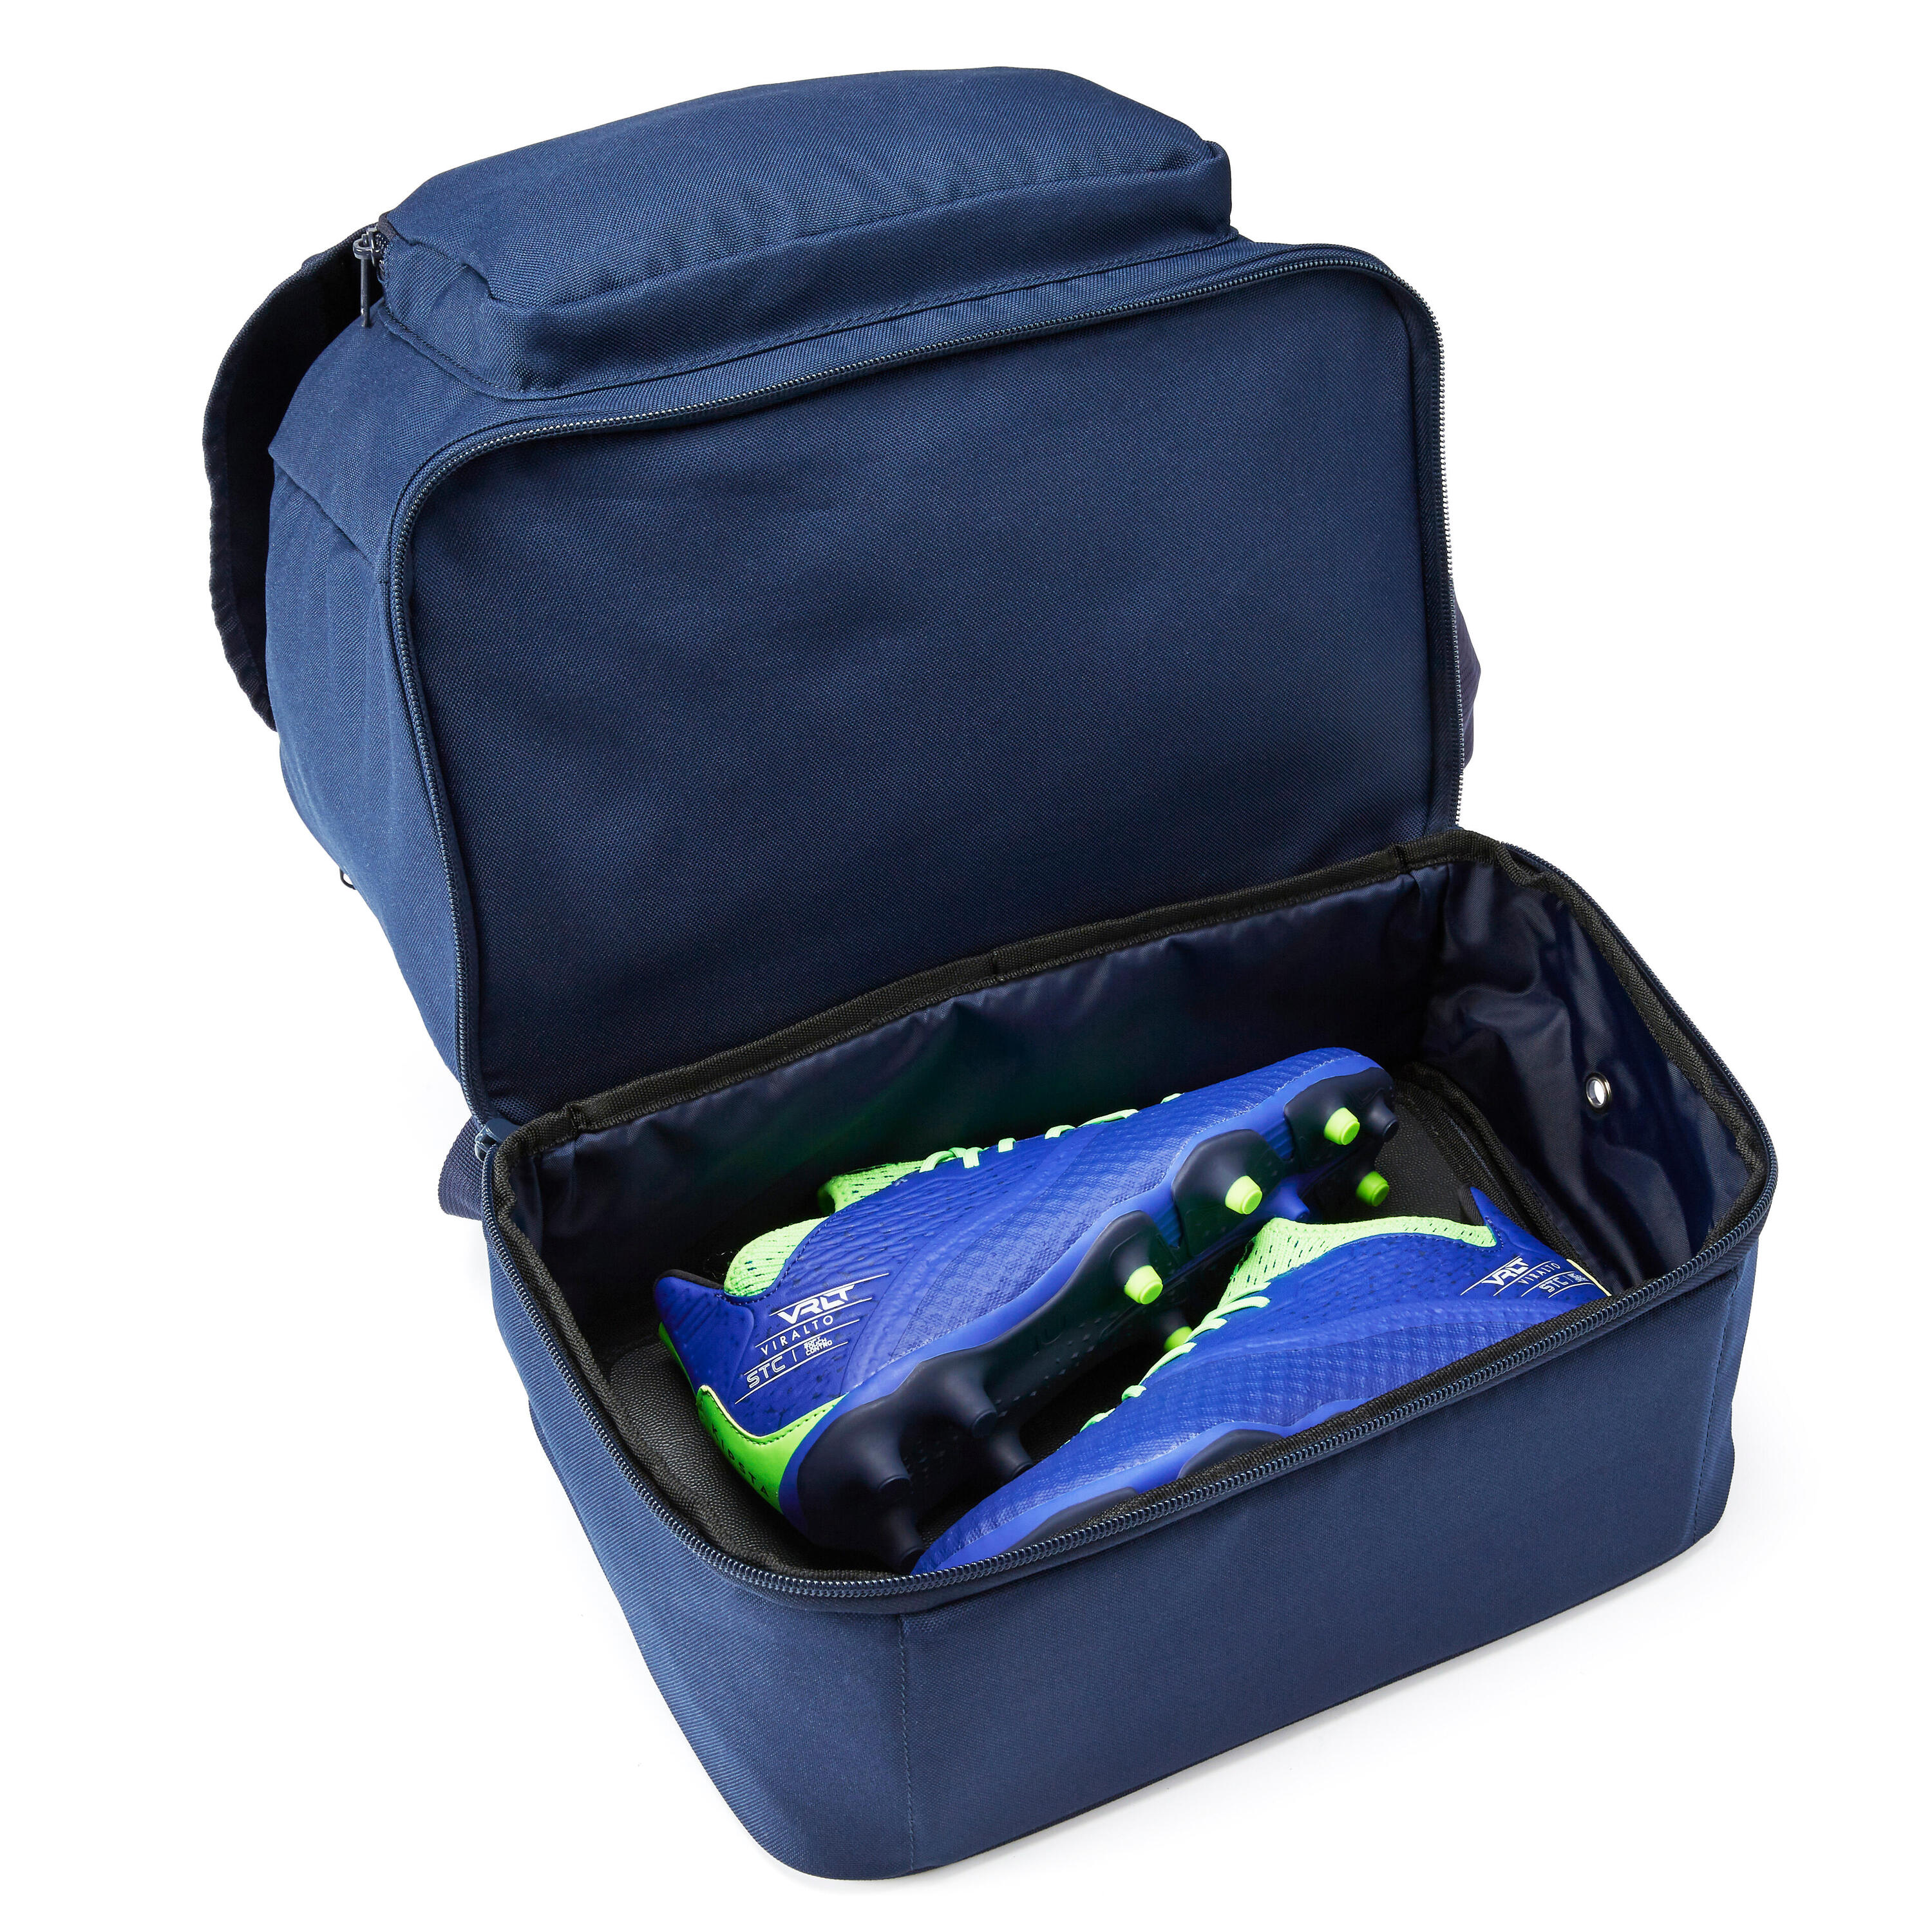 30 L Backpack Hardcase - Navy Blue 8/9